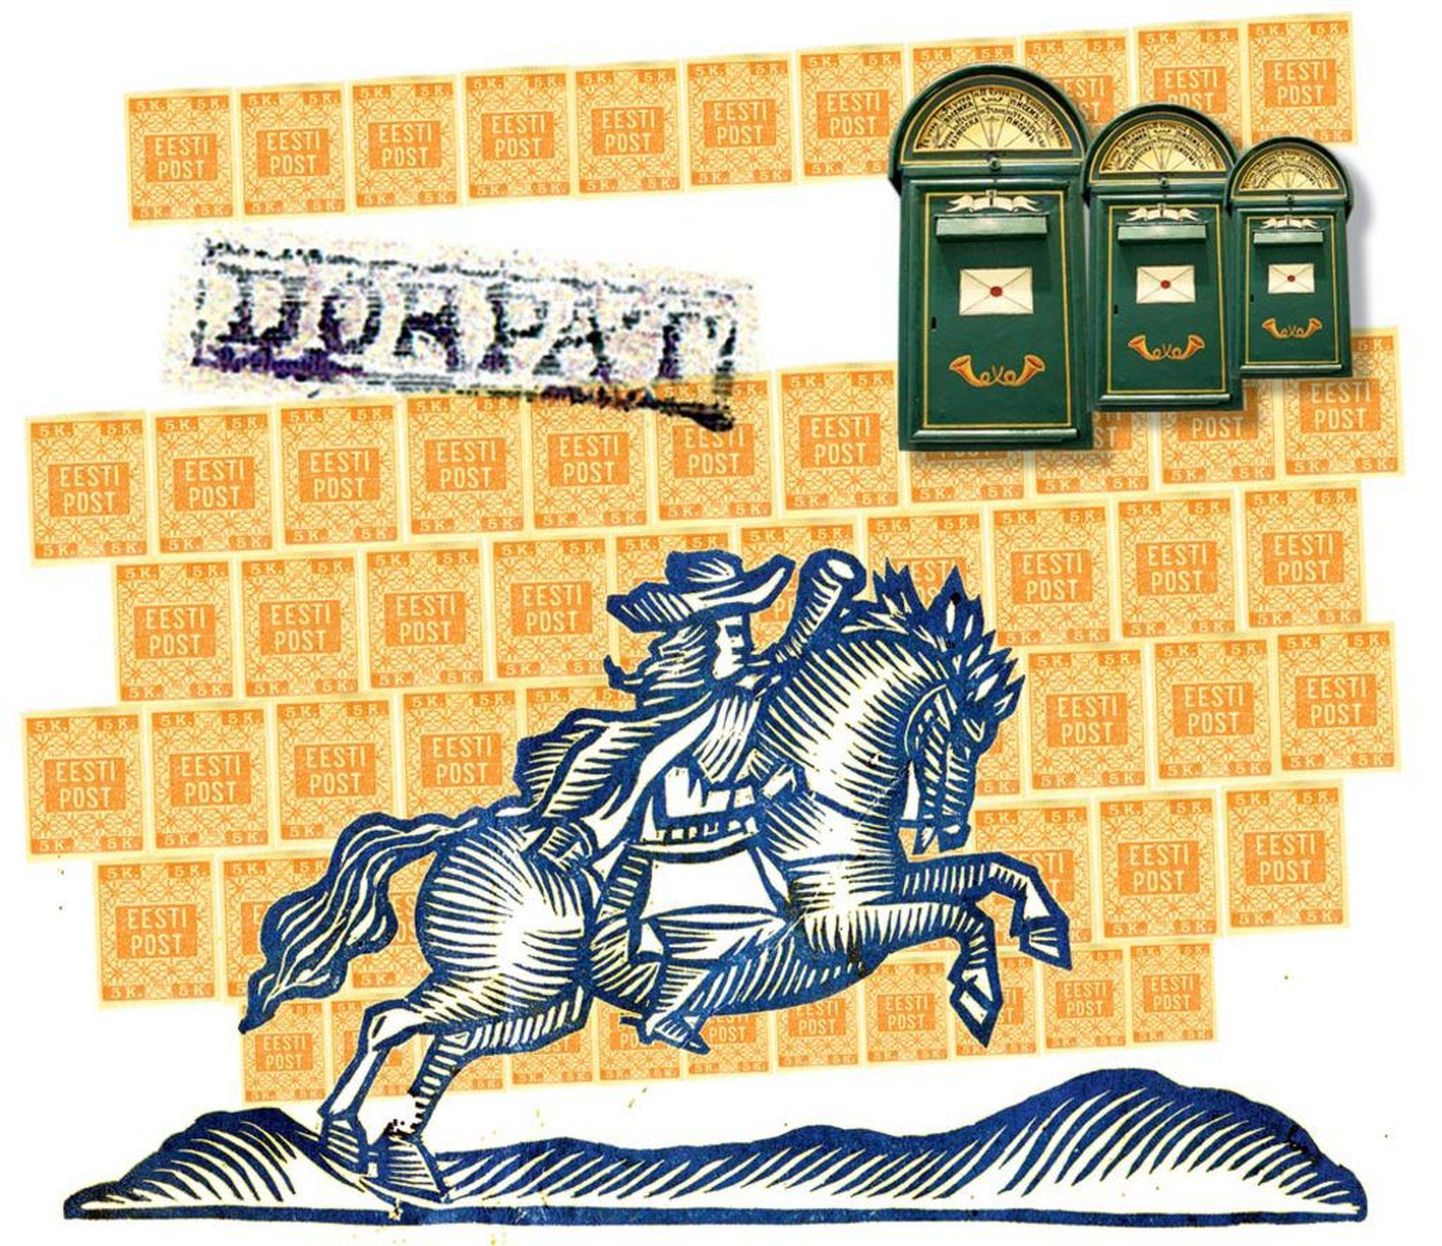 Sellel posteril näidatakse Eesti Vabariigi esimest postmarki, mis trükiti Vabadussõja ajal. See tuli käibesse 24. novembril 1918. aastal. Lugeja näeb ka esimest Eesti alal kasutusele võetud postkasti, mis on pärit tsaariajast. See pandi üles 1864. aastal. Esiplaanil on Rootsi riikliku postiteenistuse omaaegne tunnusmärk..